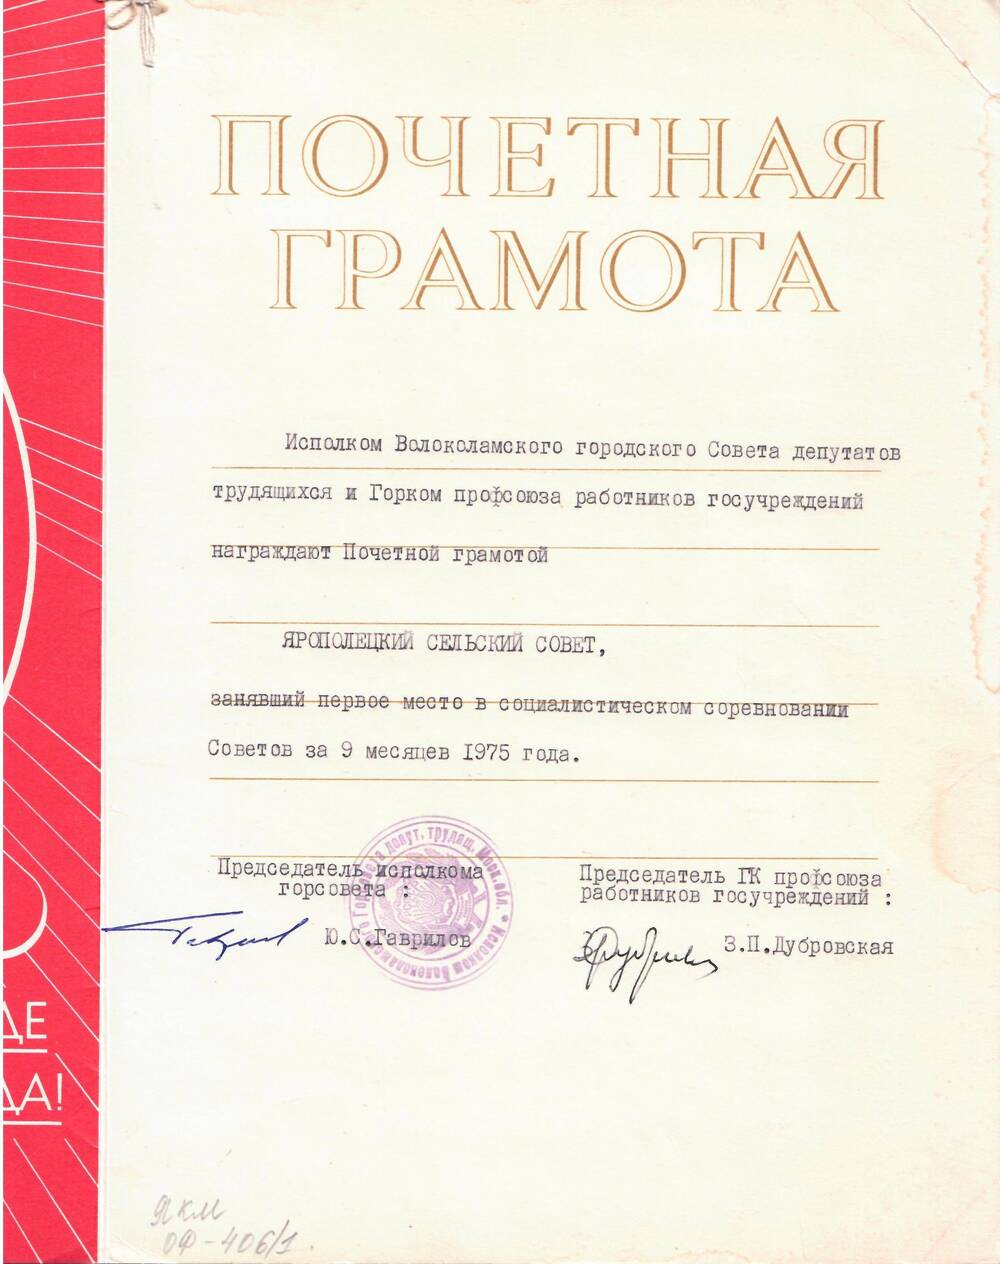 Почетная грамота, награжден Ярополецкий с/совет, занявший I место в соц. соревнованиях за 9 месяцев 1975 г.